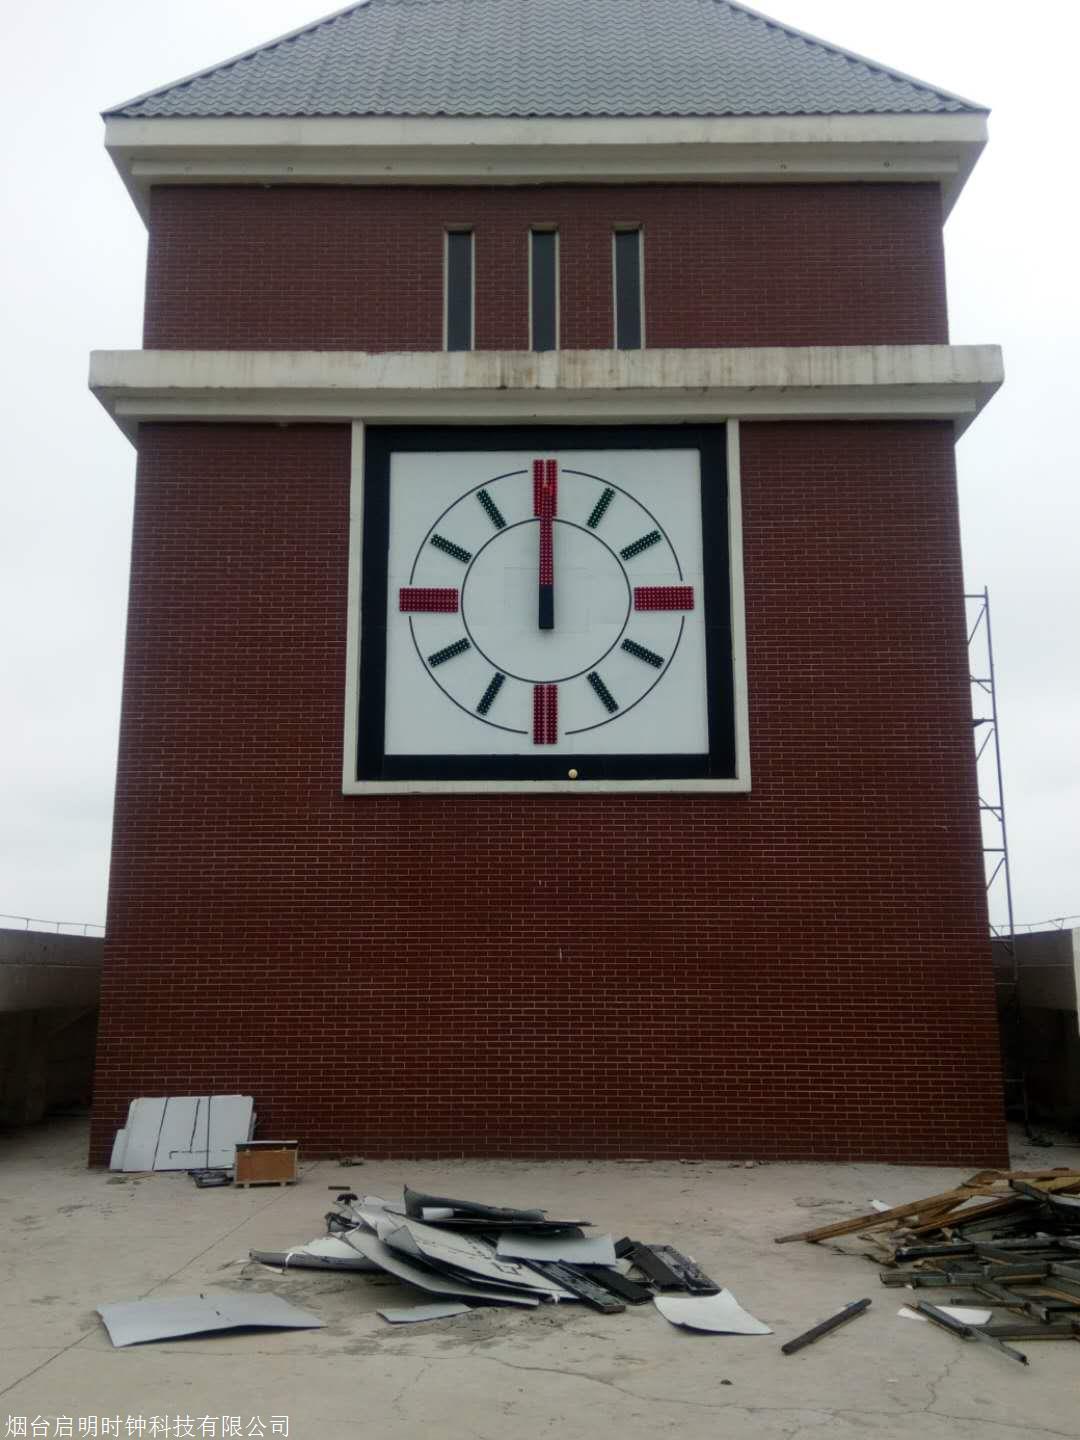 塔楼大钟 QM-3 大型建筑塔钟 墙体大钟 烟台启明时钟5